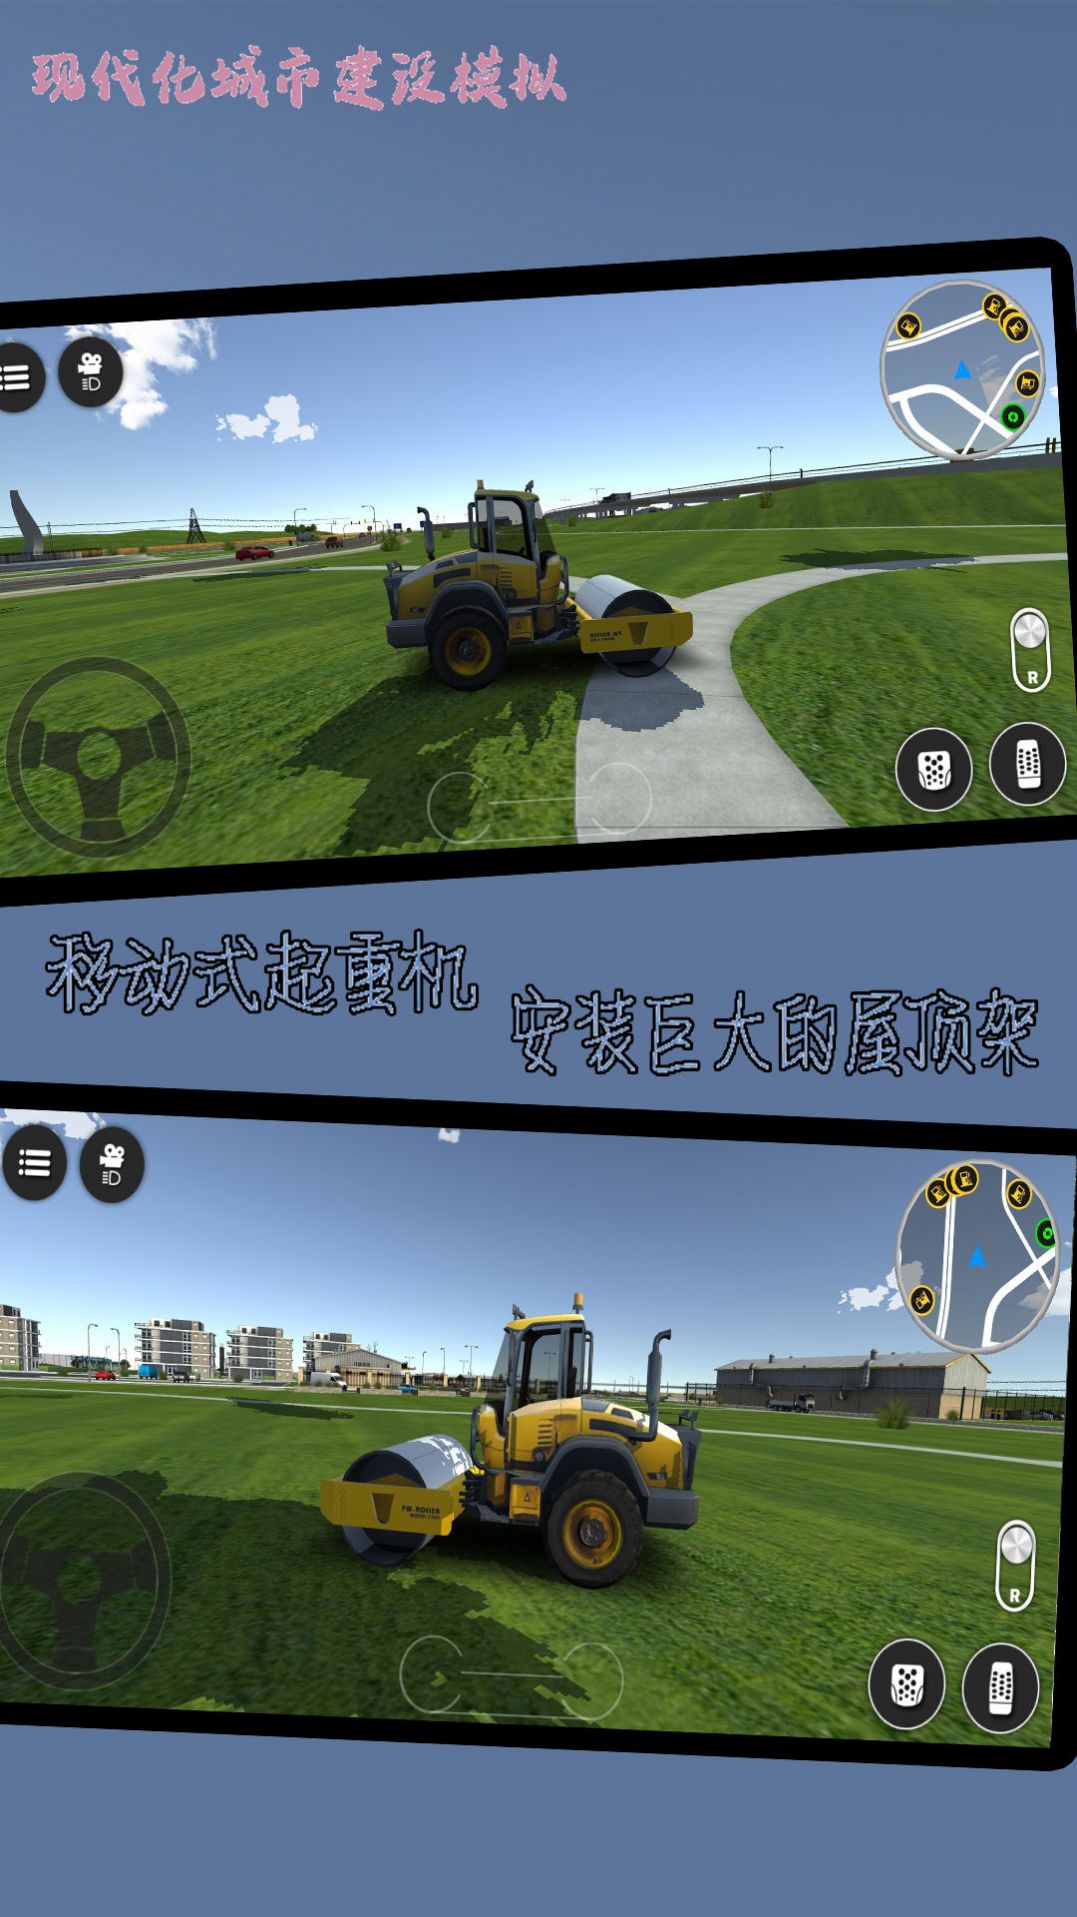 现代化城市建设模拟手游下载 v1021.101.10 安卓版2